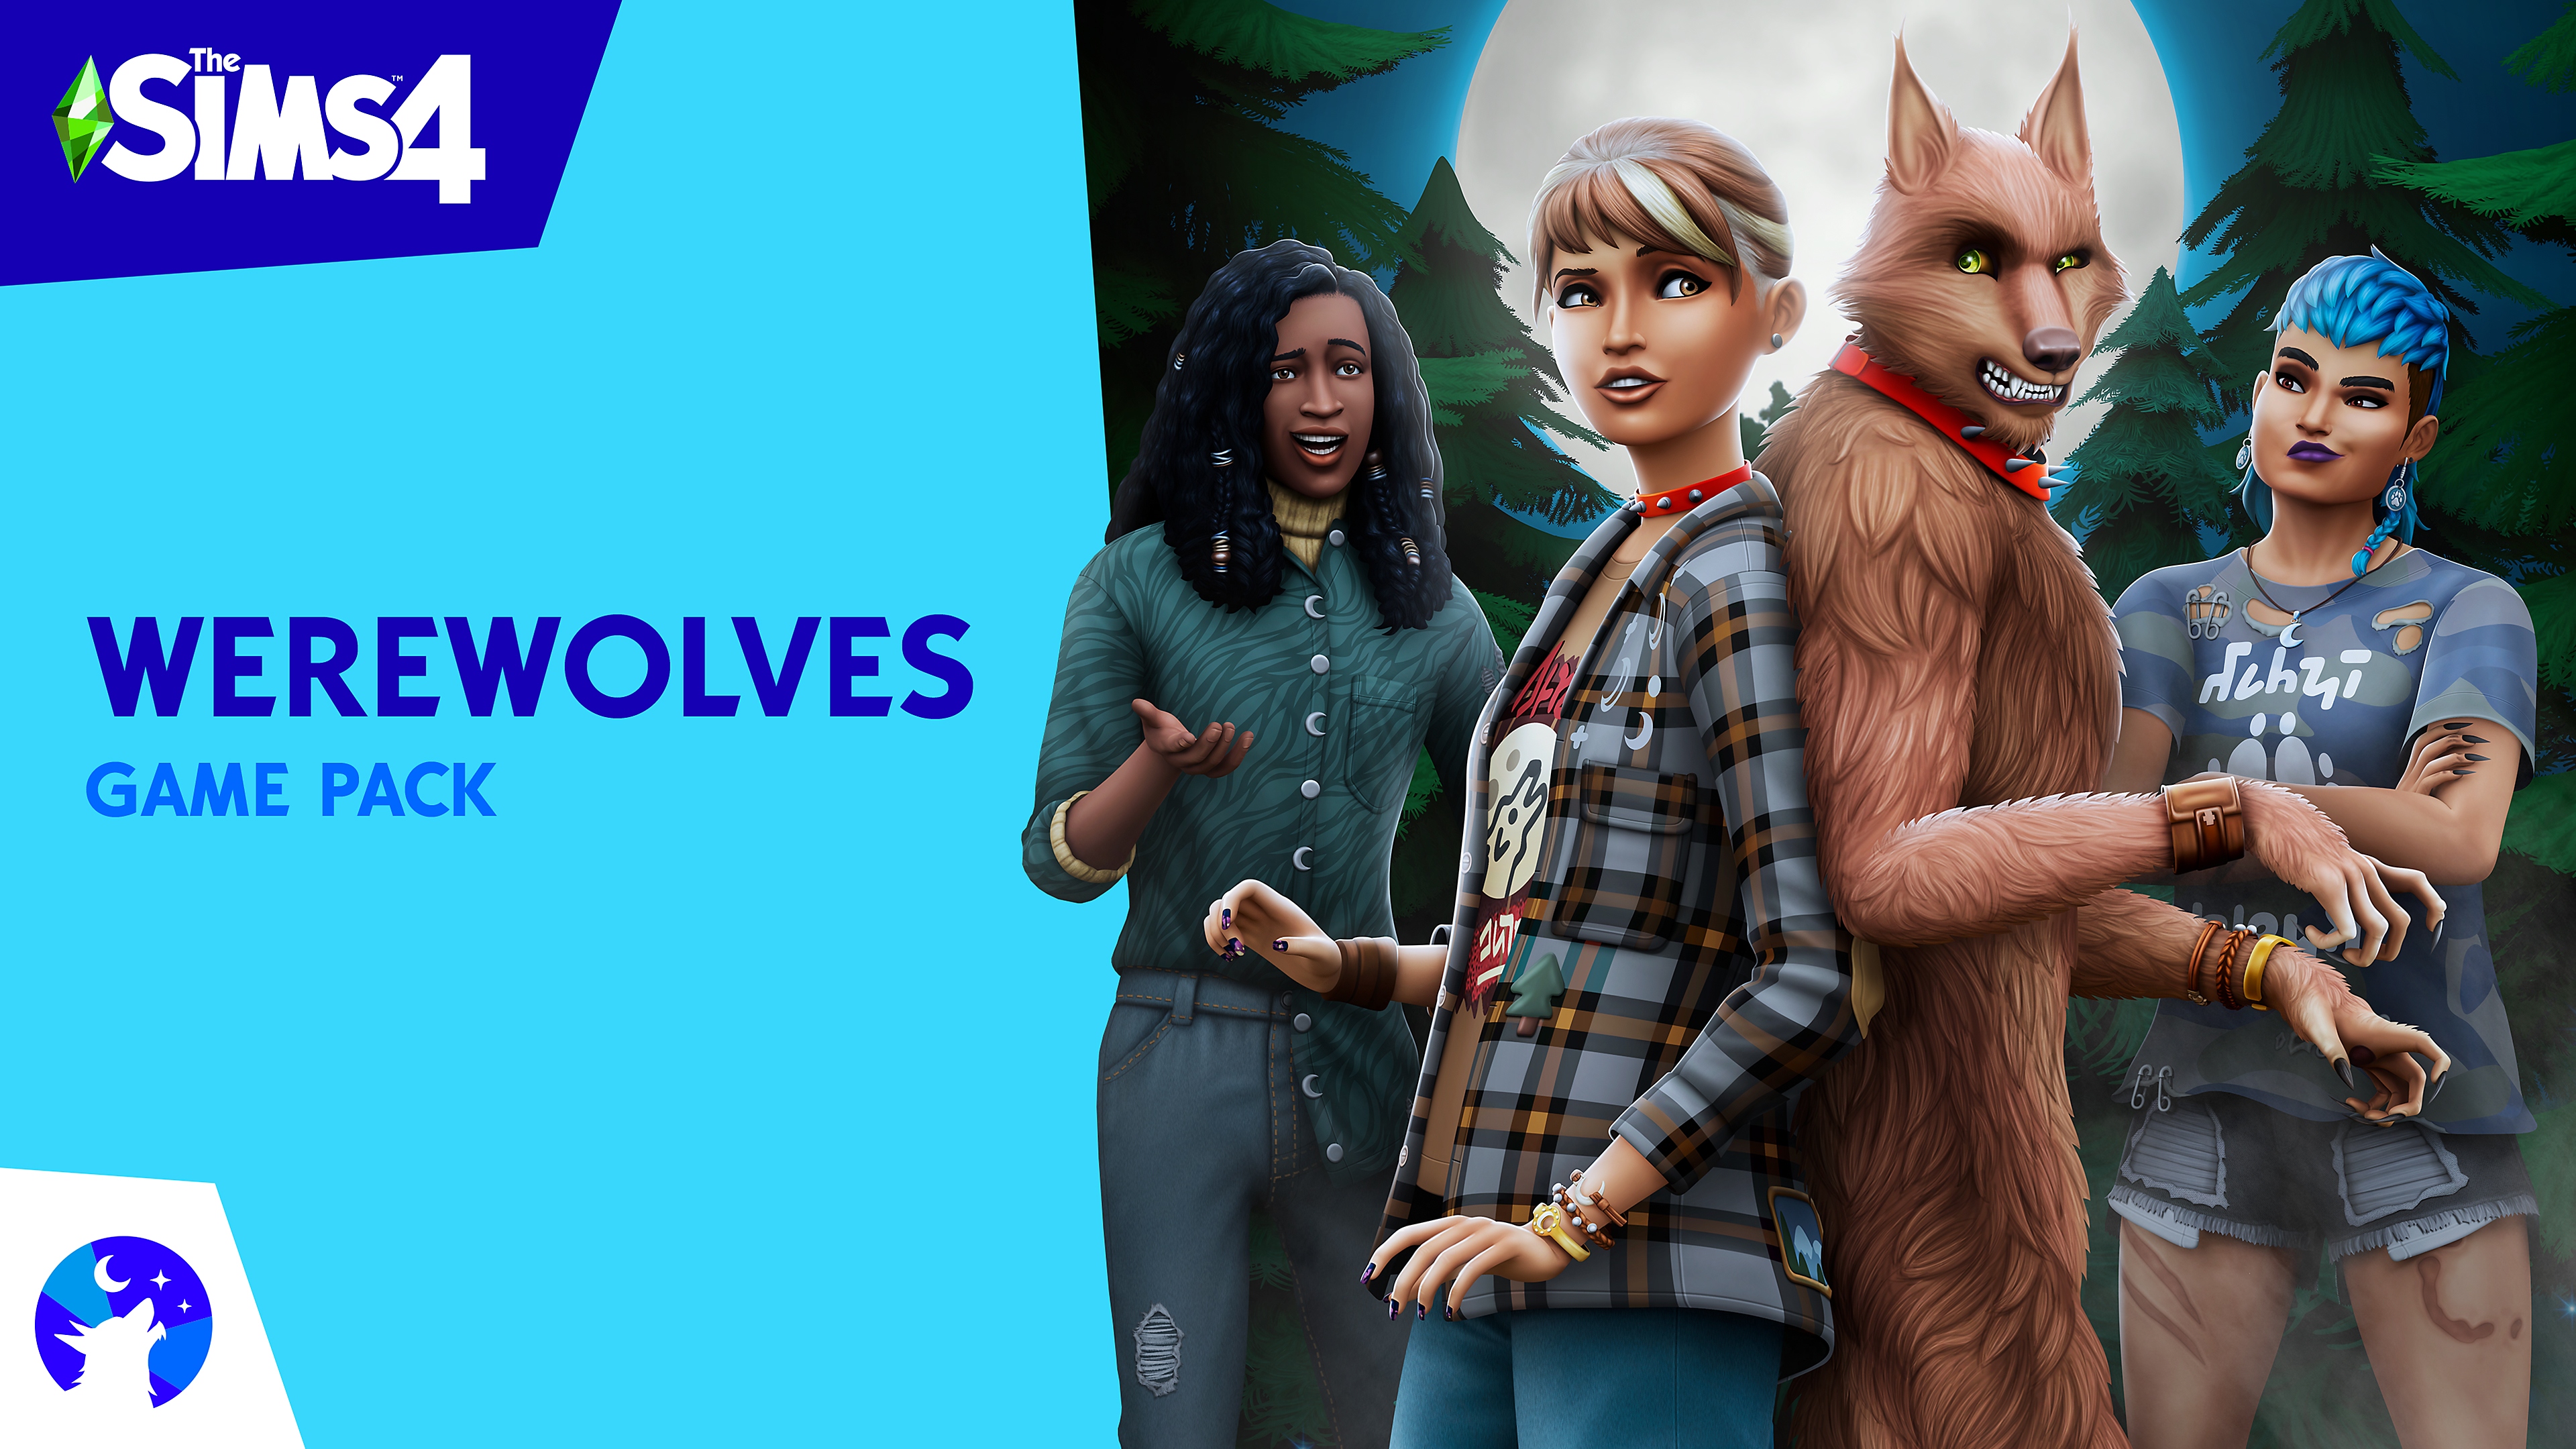 The Sims 4: Pacote Werewolves - arte principal com os Sims e um lobisomen